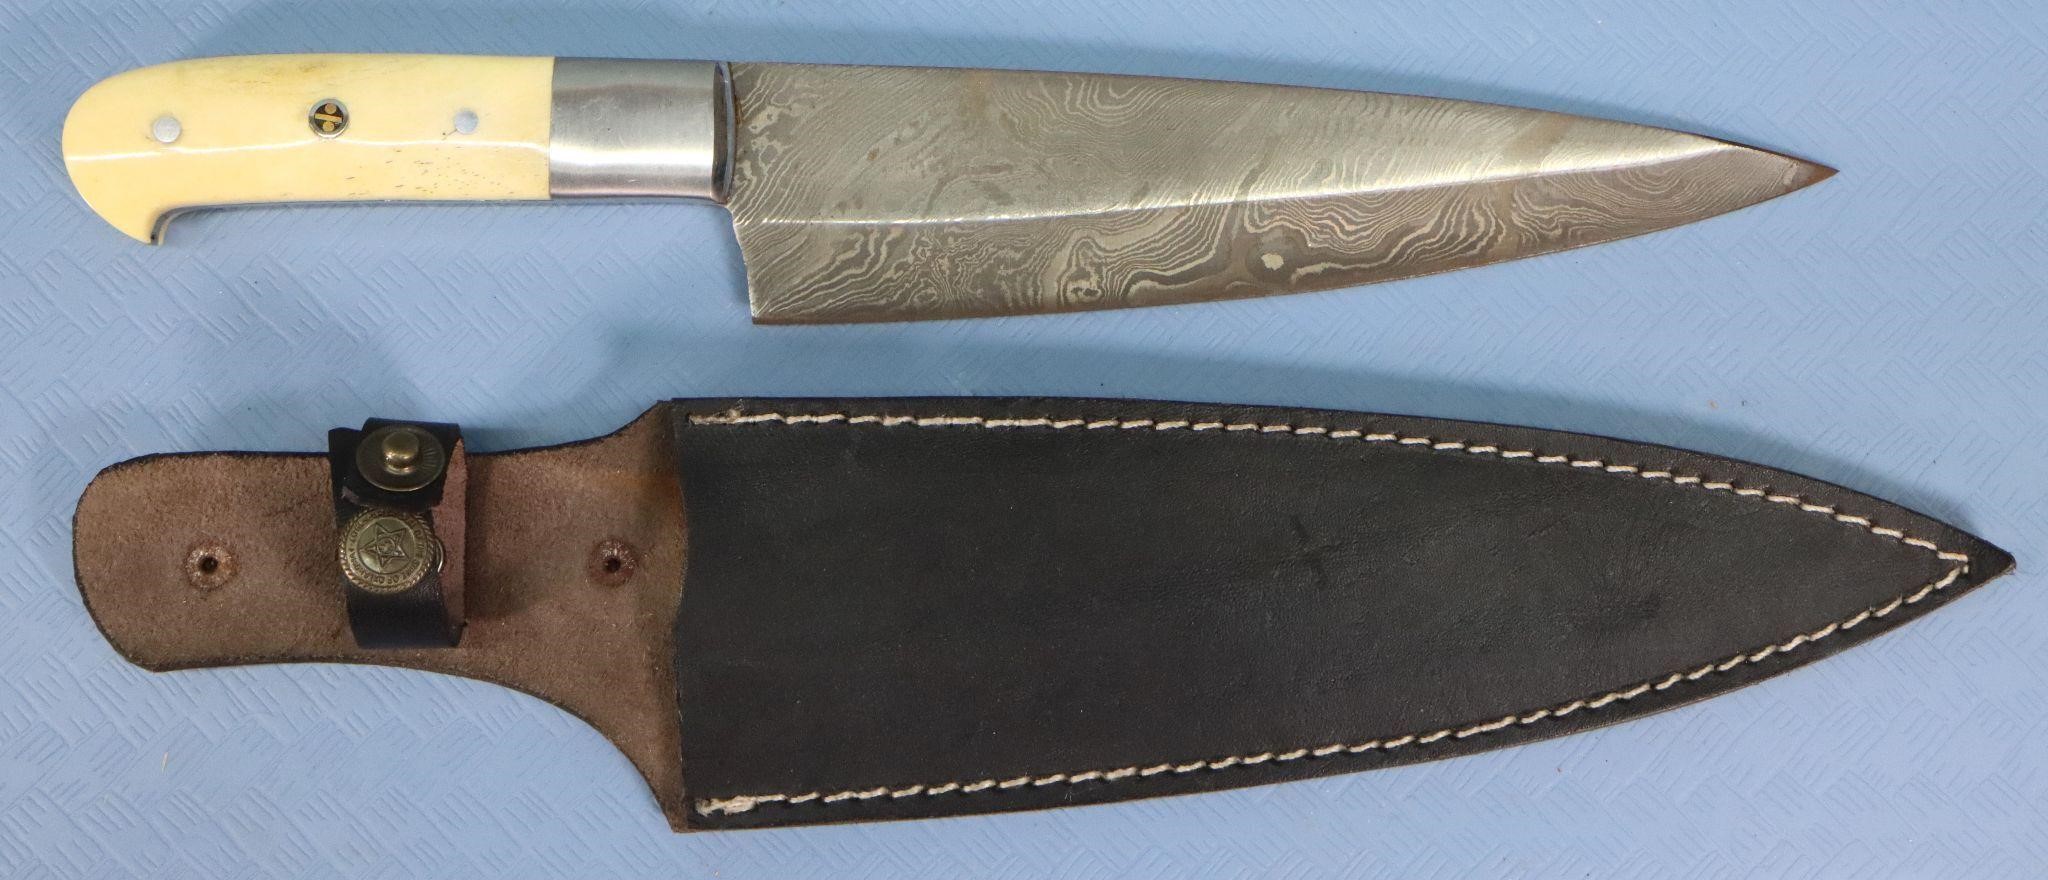 Vintage Damascus Steel Sheath Knife